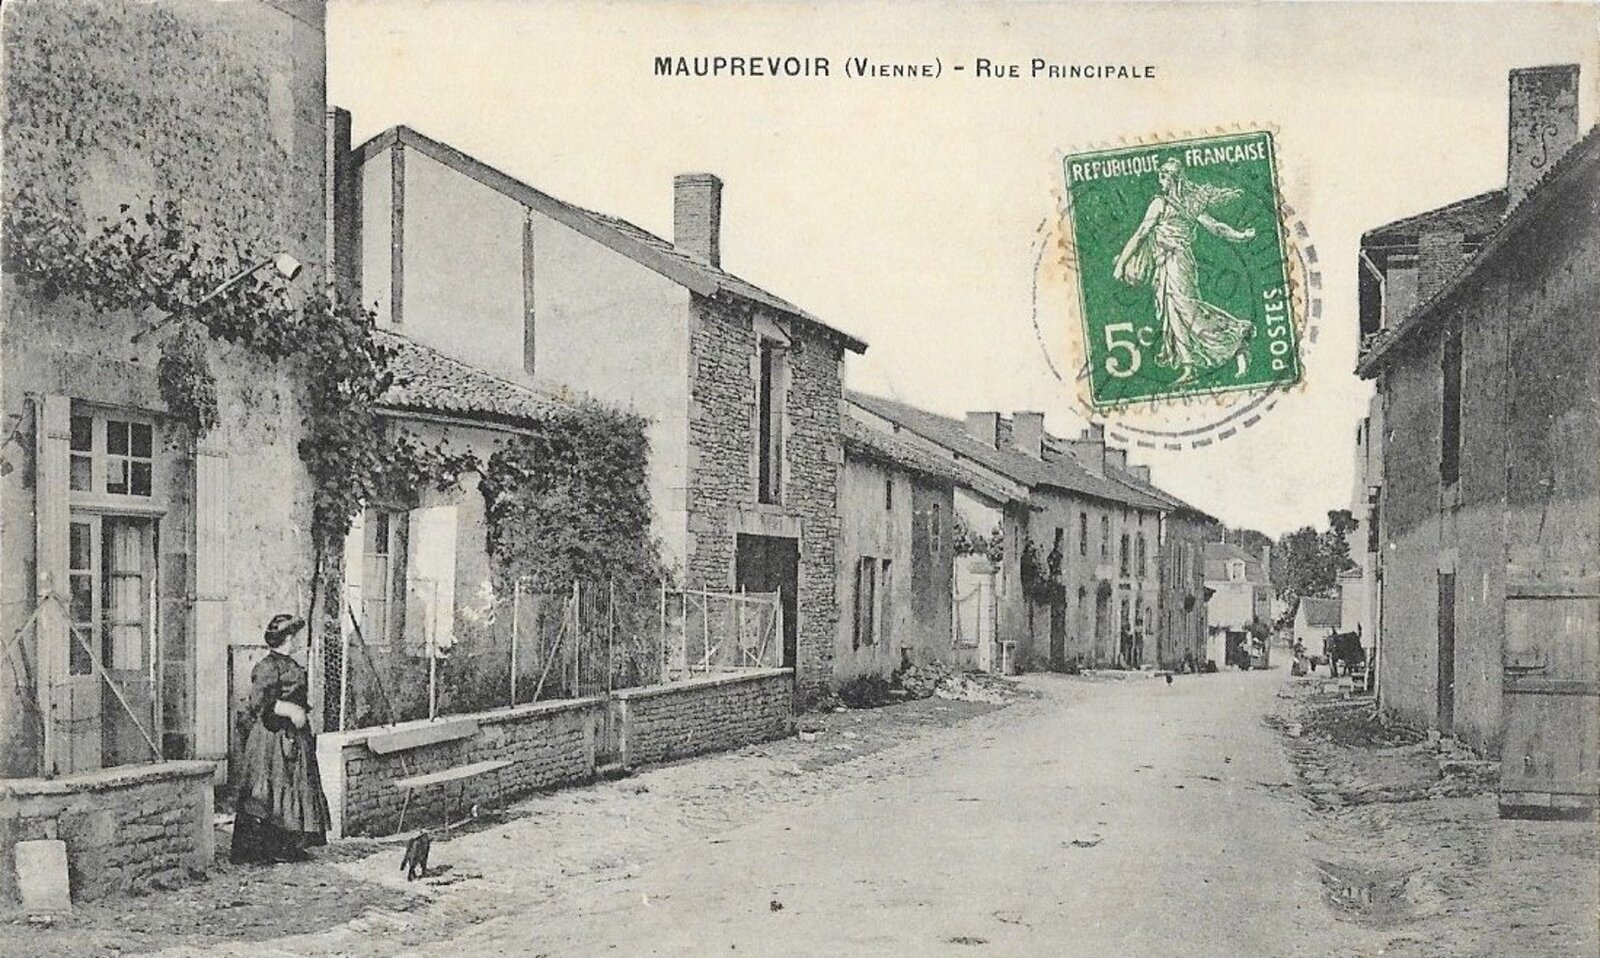 Carte postale de la rue principale de Mauprévoir en 1910 (Geneanet)